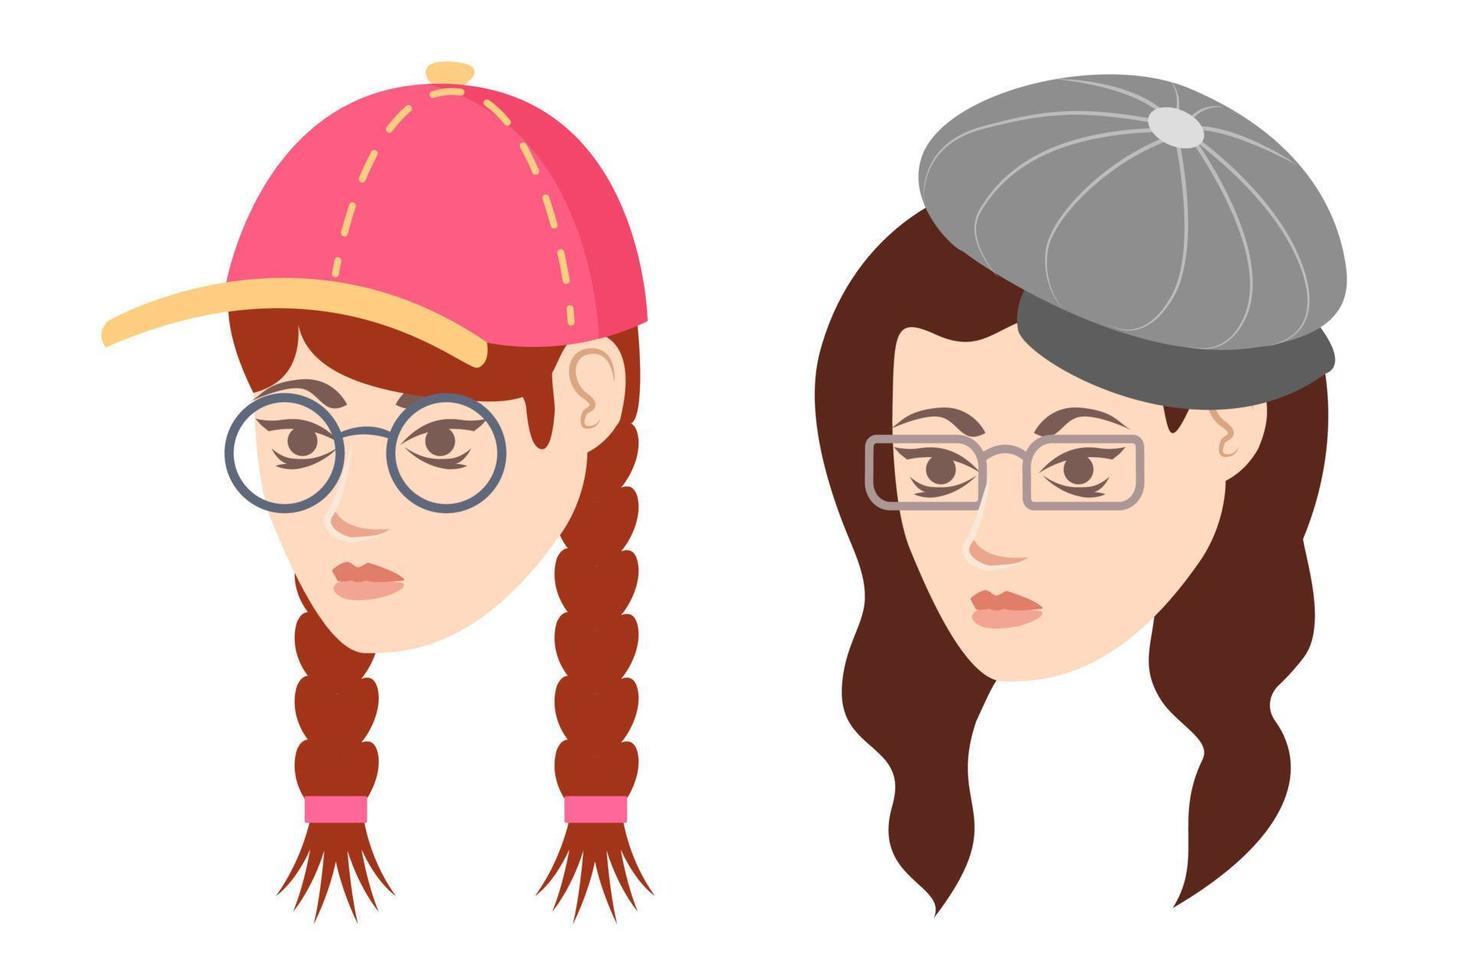 ilustrações de menina com chapéu e óculos. retratos de menina ilustrações de desenhos animados vetor